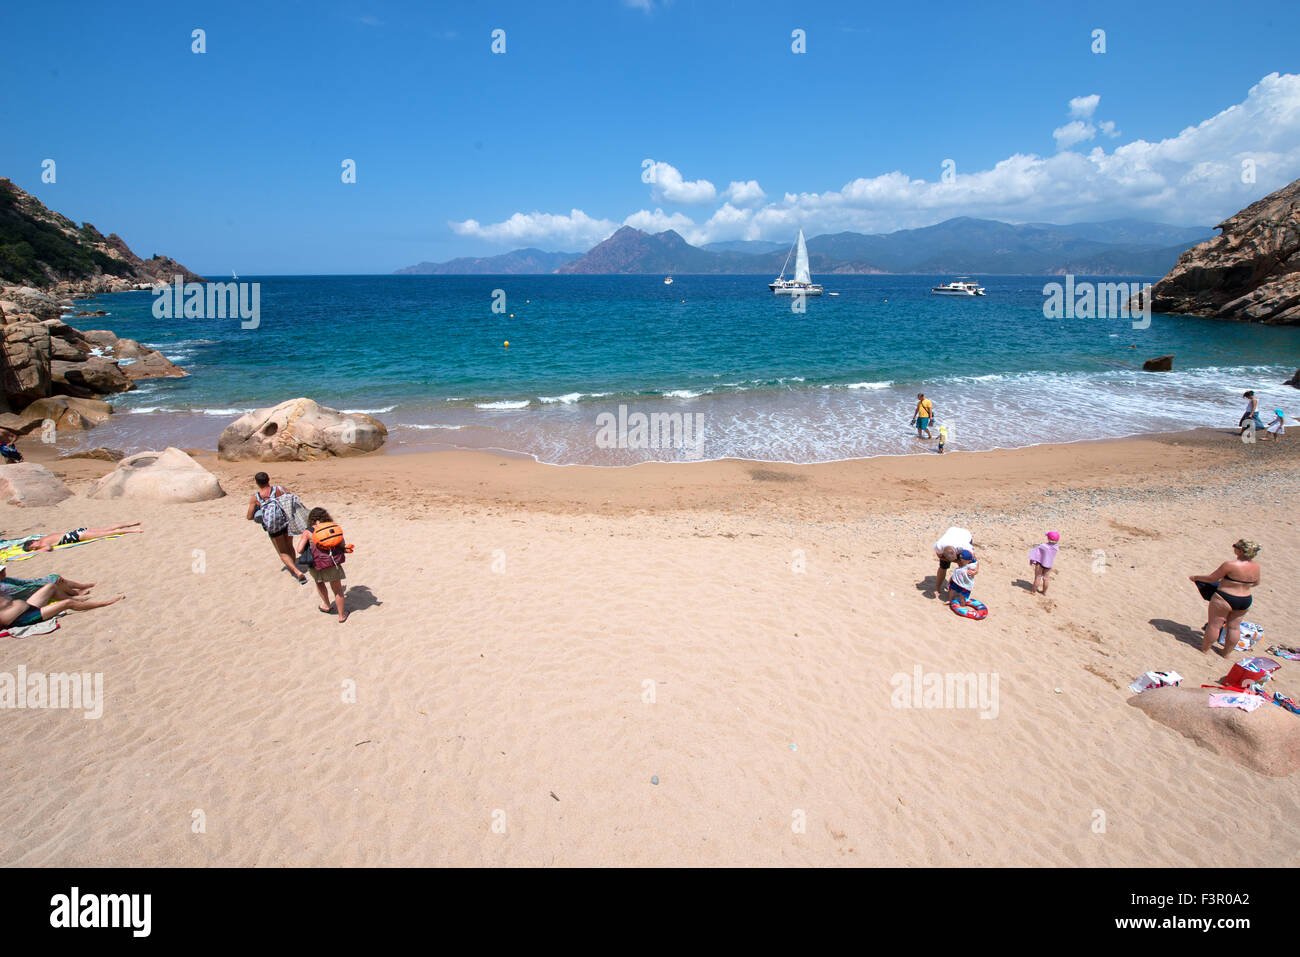 Appartata piccola e bella spiaggia a marino de ficajola, piana, Corsica, Francia Foto Stock